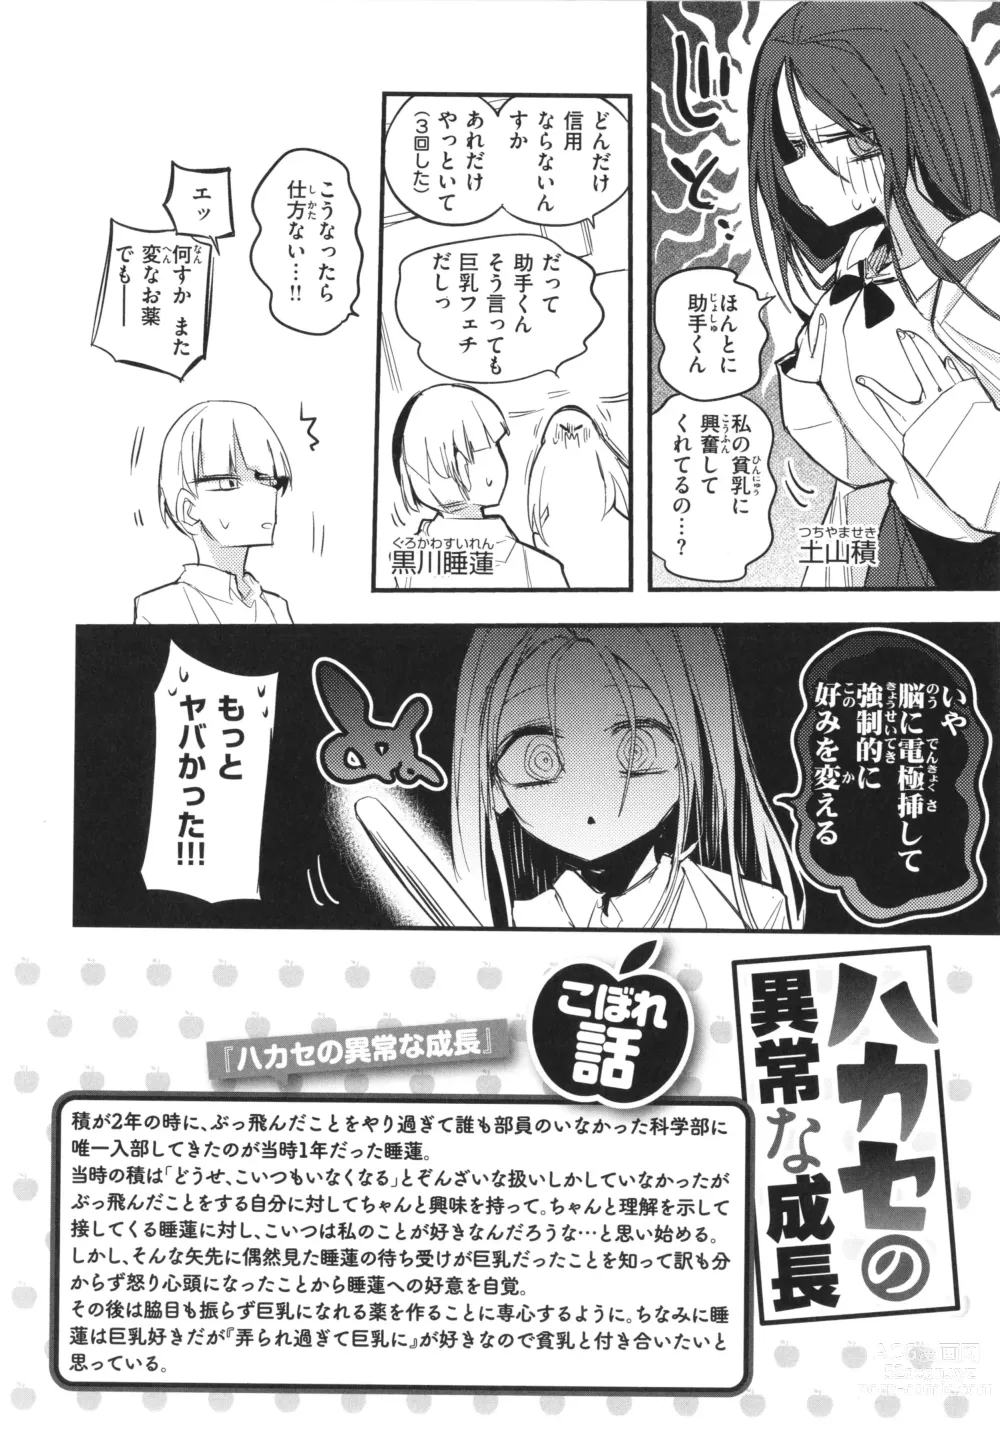 Page 156 of manga New Tawawa Paradise